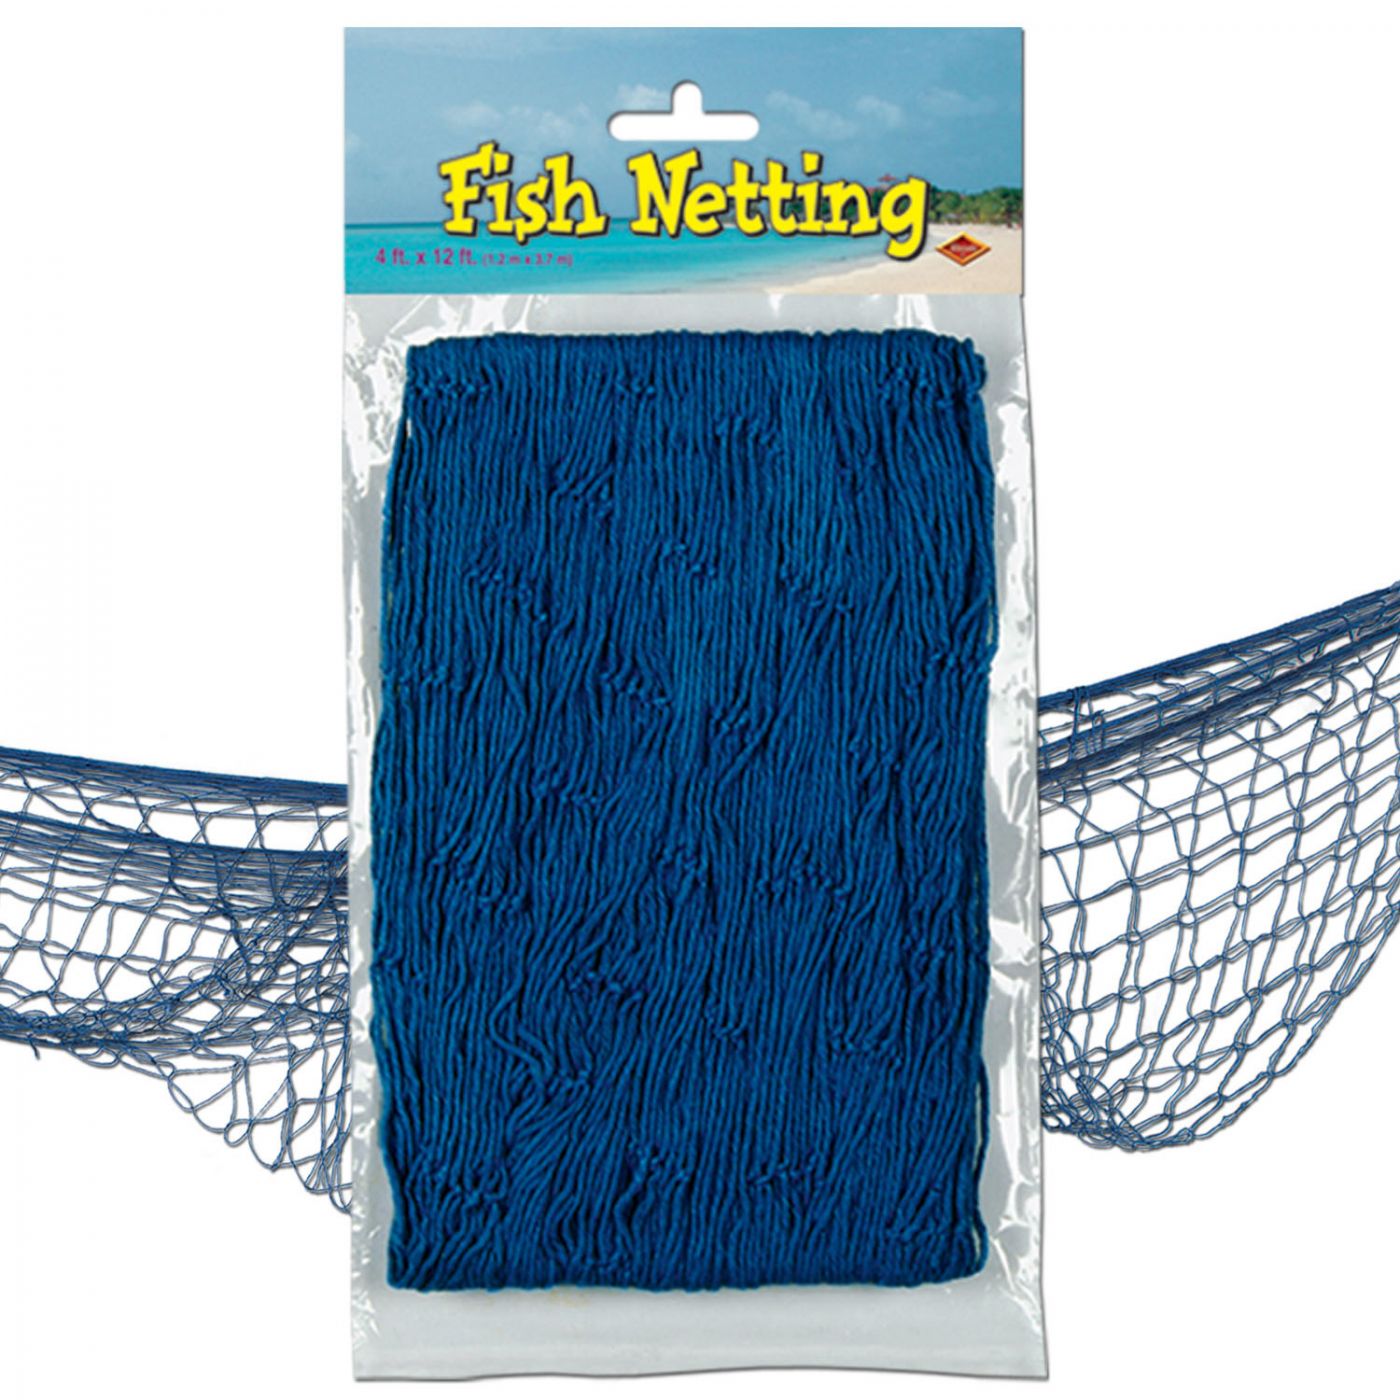 Fish Netting image